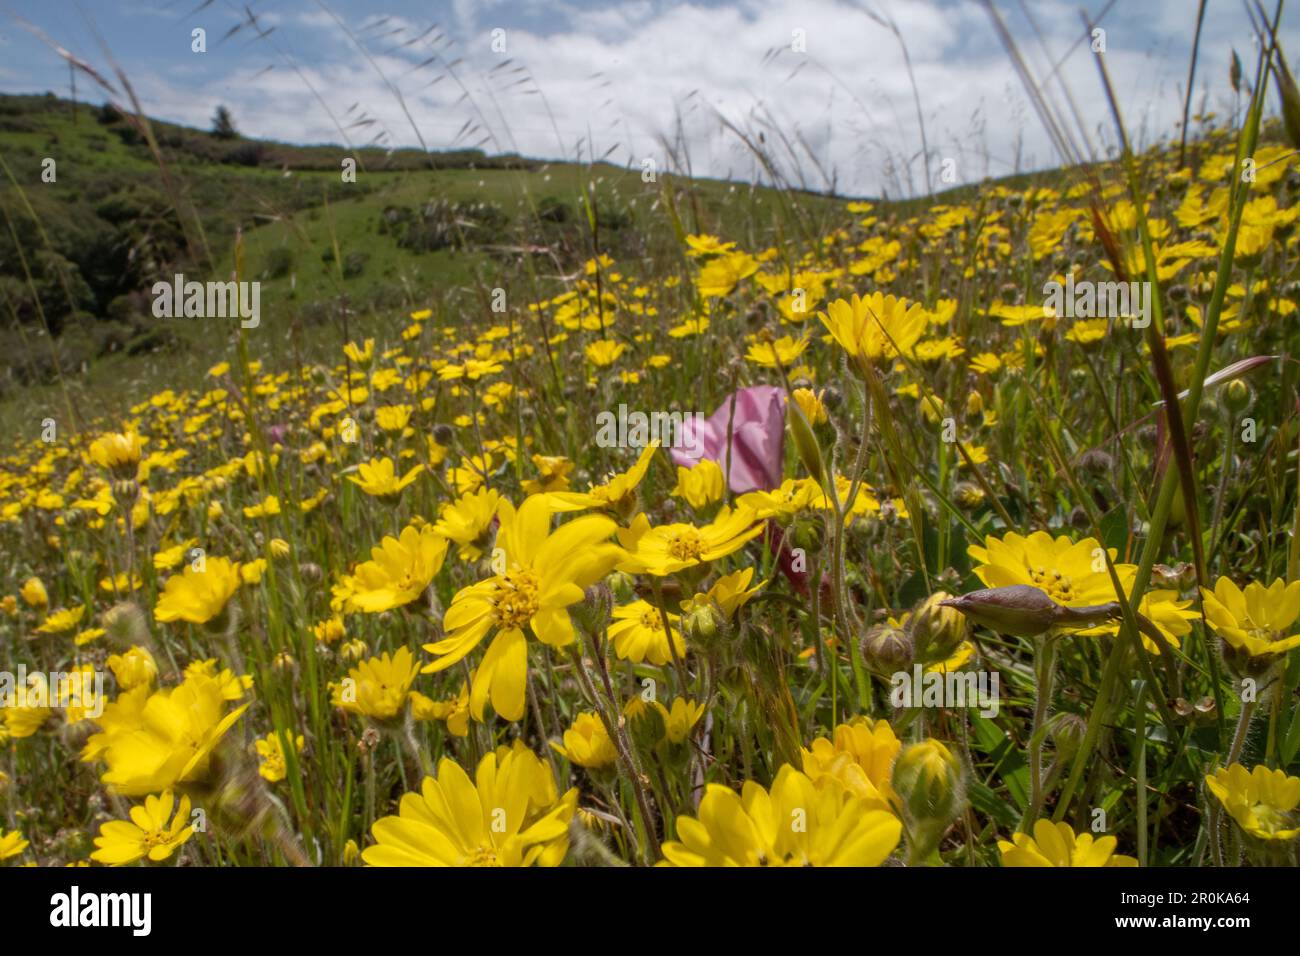 Floraison Hemizonia congeste - Hayfield Tarweed dans un champ en Californie, les fleurs sauvages jaunes couvrent les collines au printemps. Banque D'Images